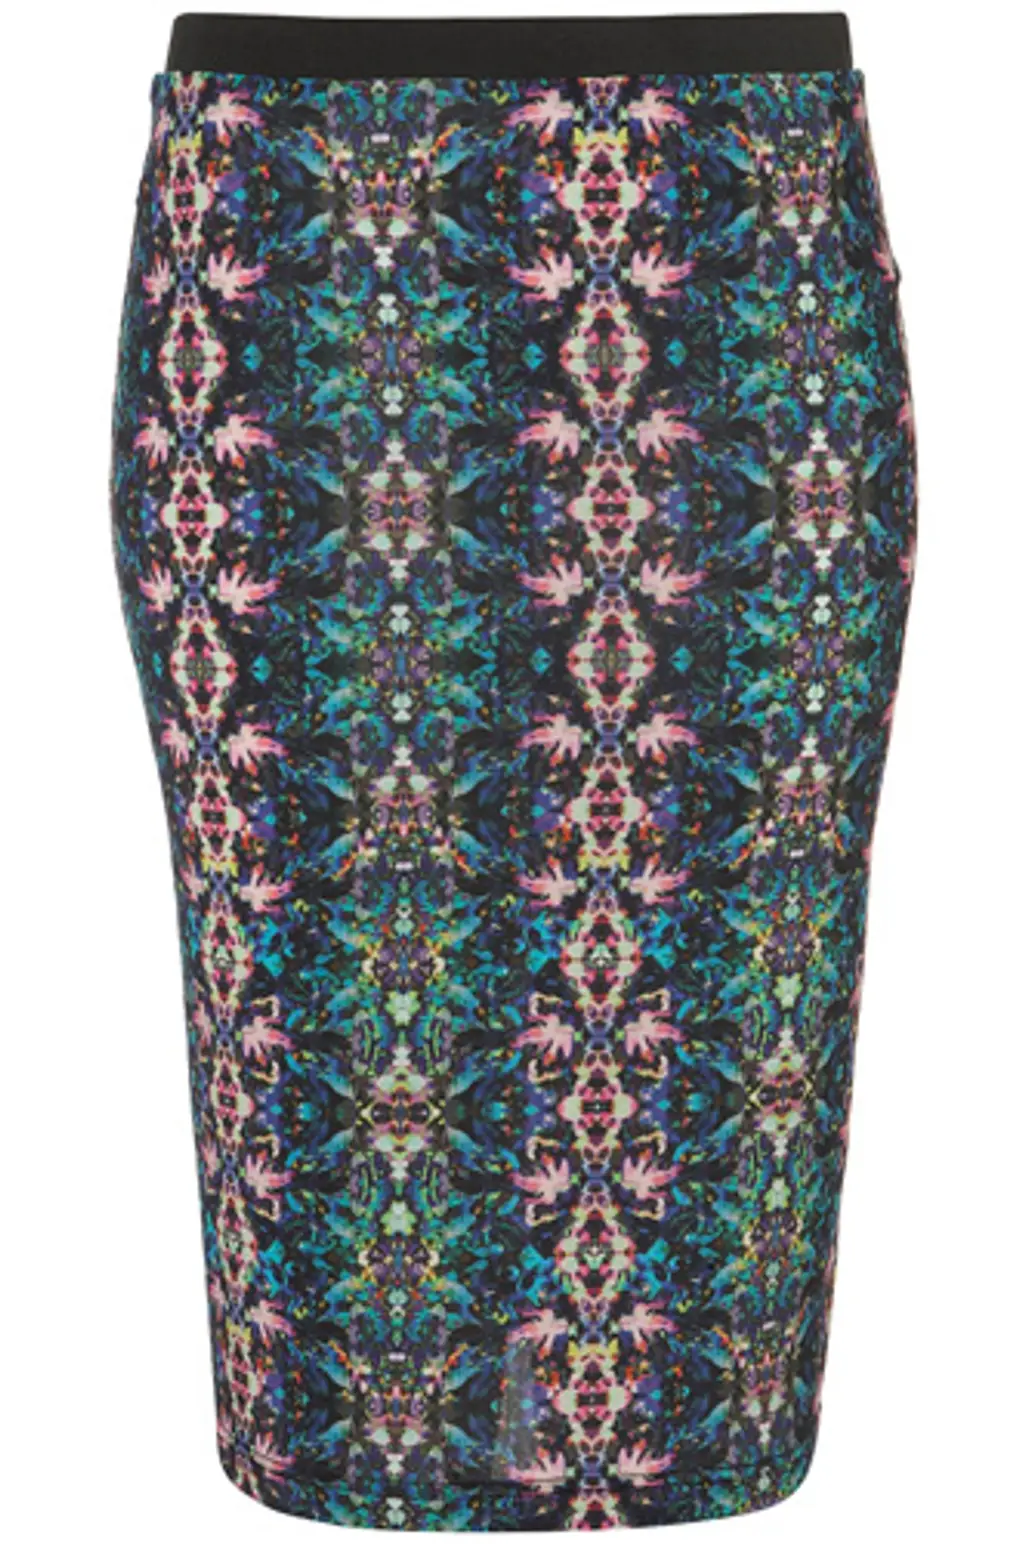 Topshop Kaleidoscope Print Pencil Skirt